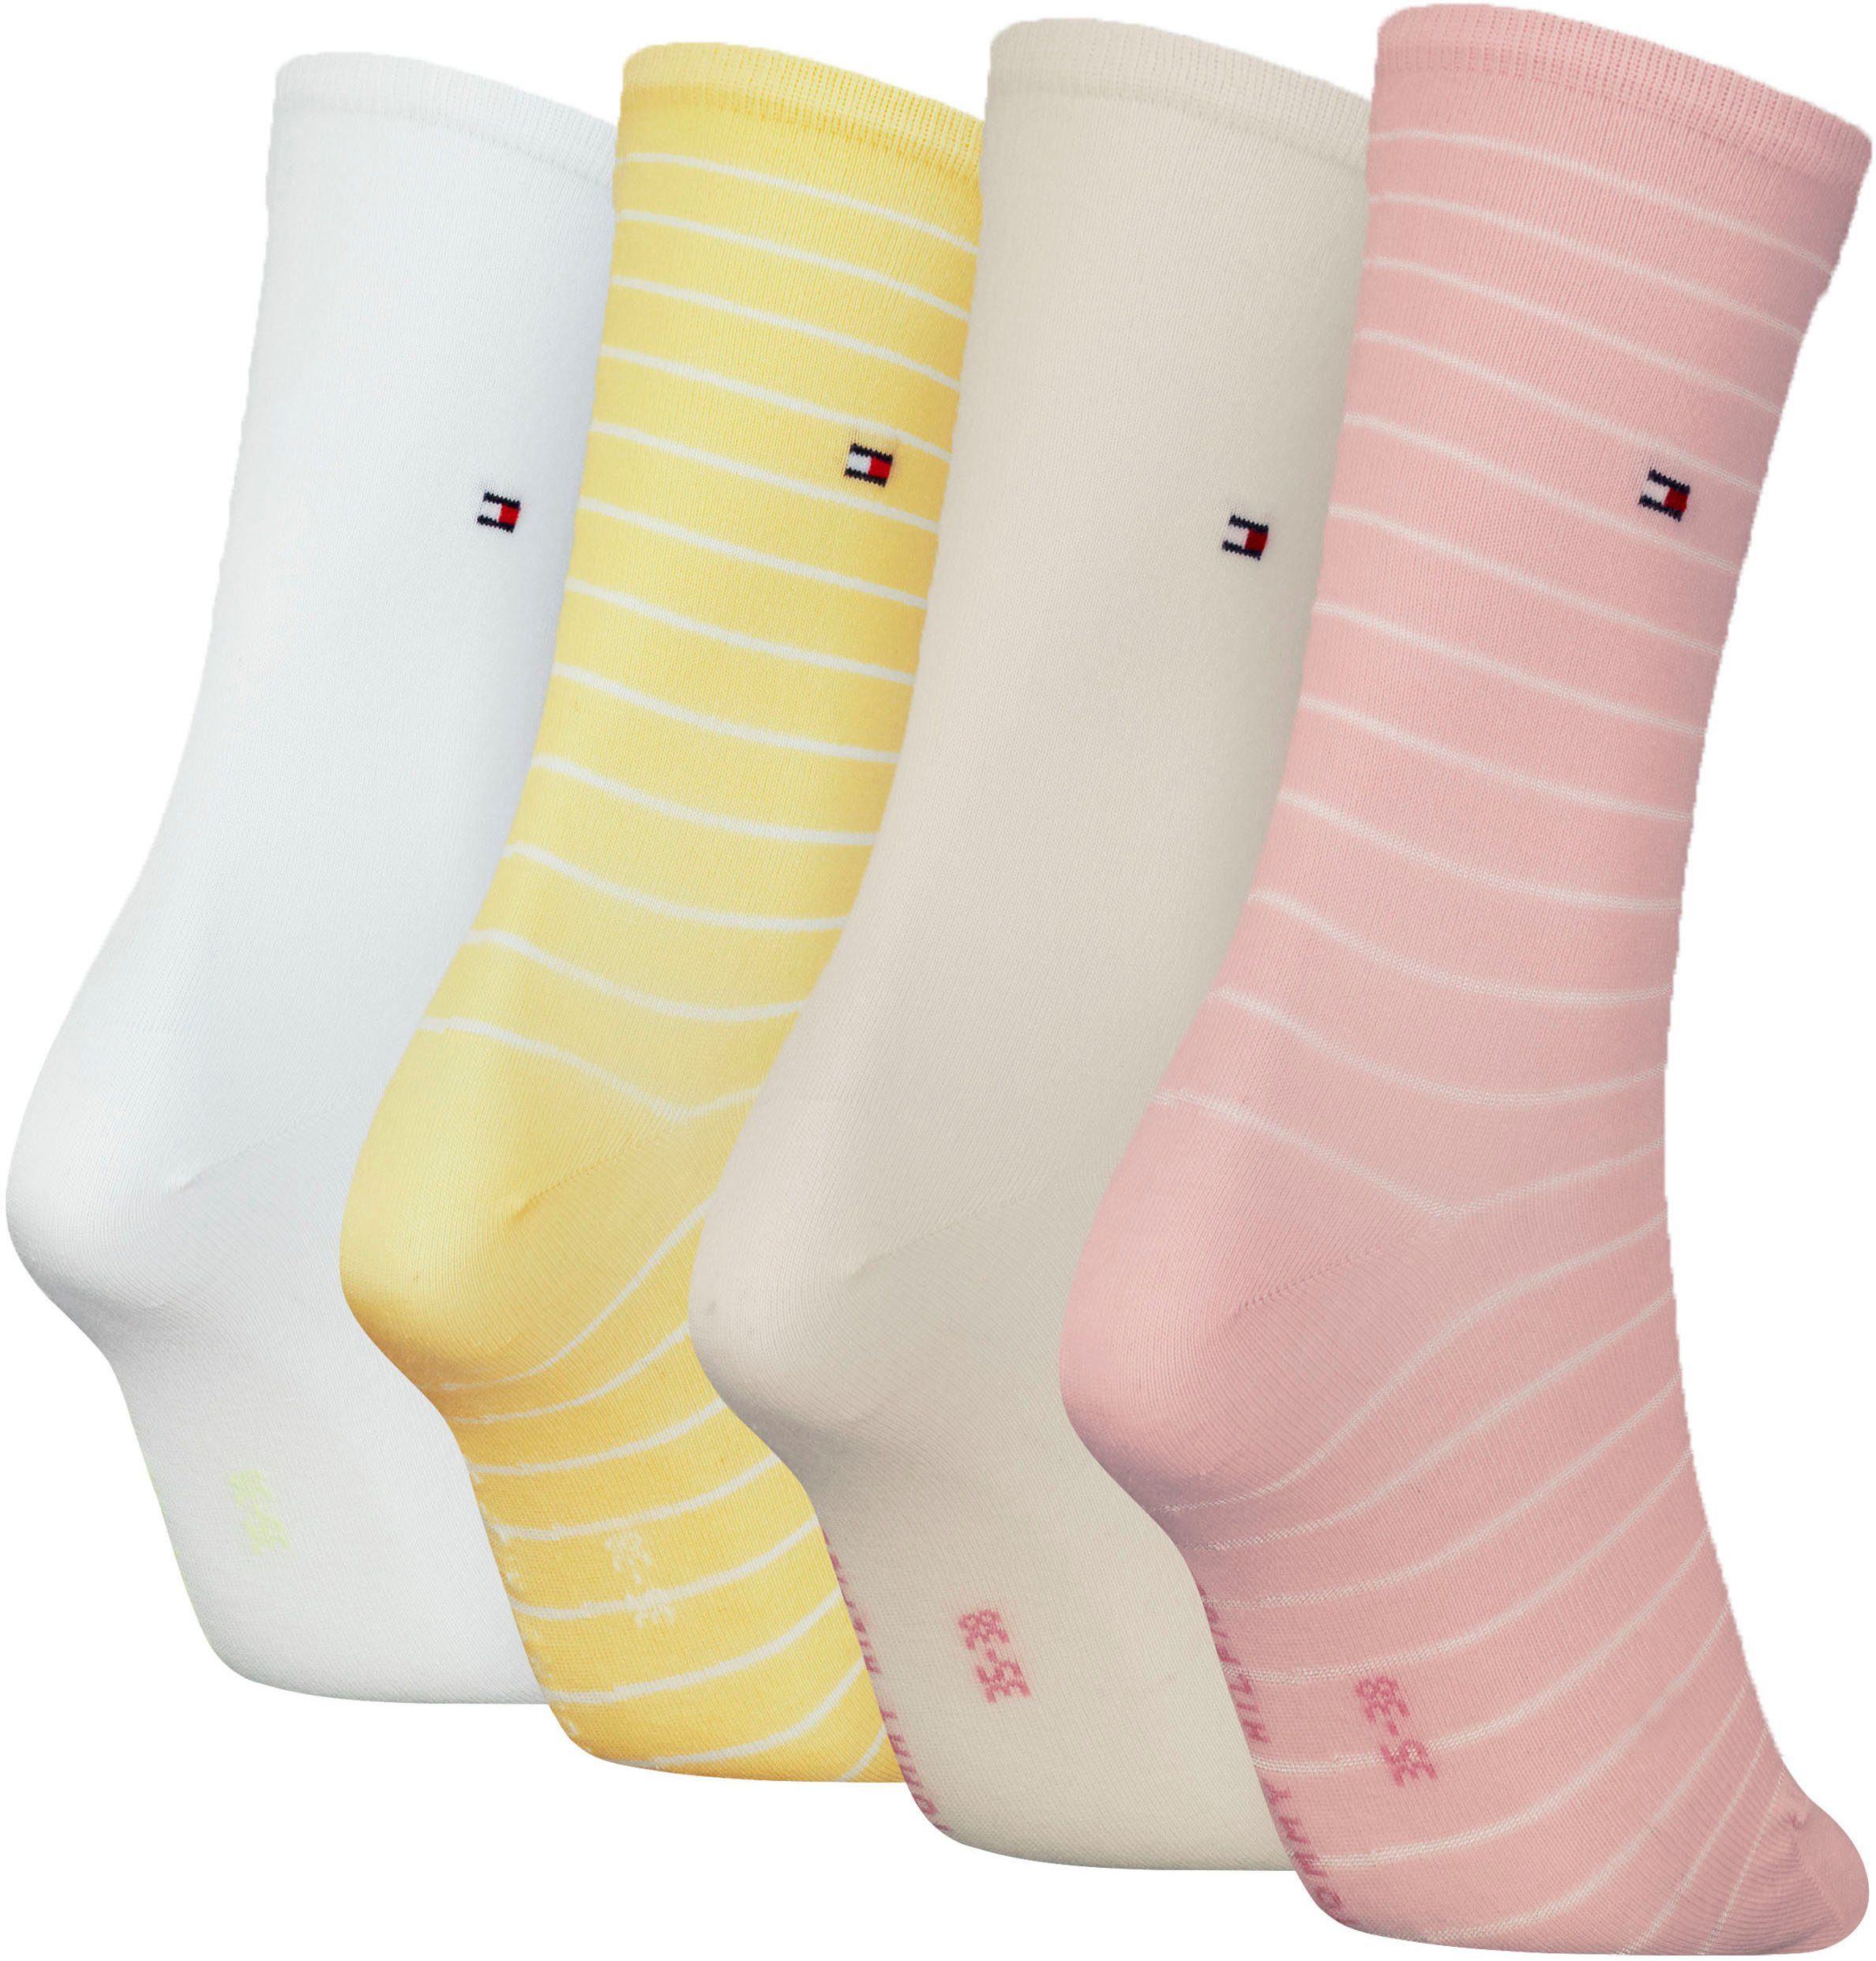 raffiniertes Socken Hilfiger Streifendesign pink-yellow-white klassisches Tommy